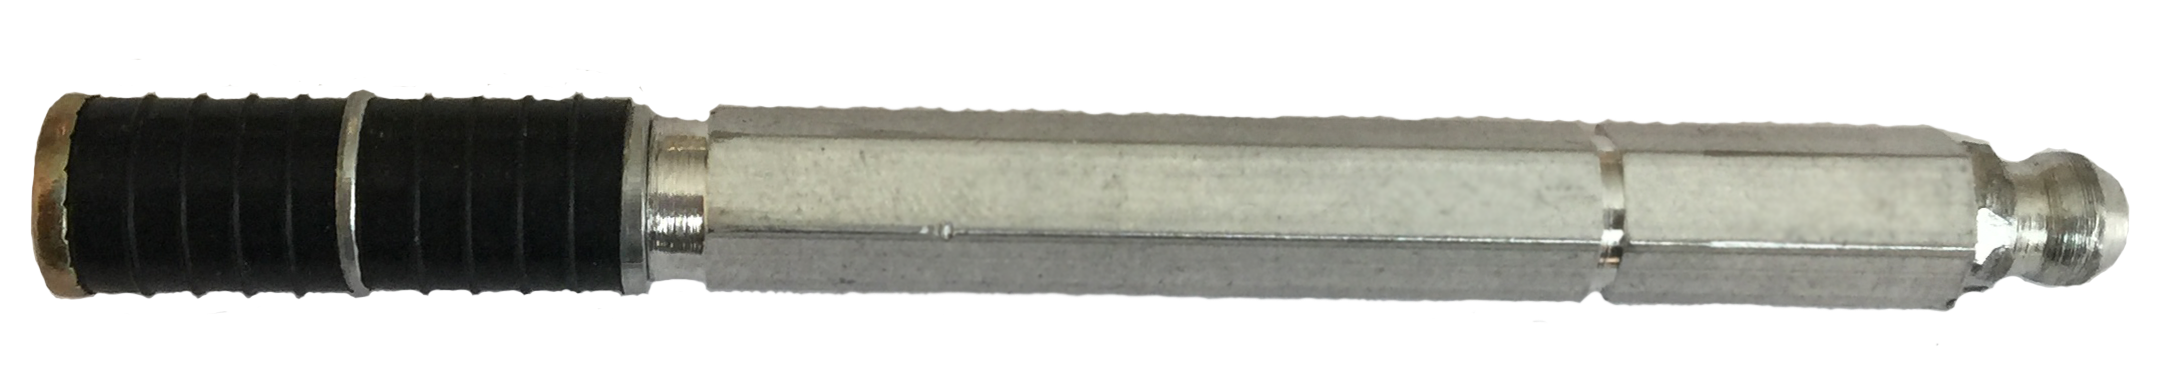 Инъекционный пакер 10х100 мм (алюминий) от производителя Машиностроительный завод №7